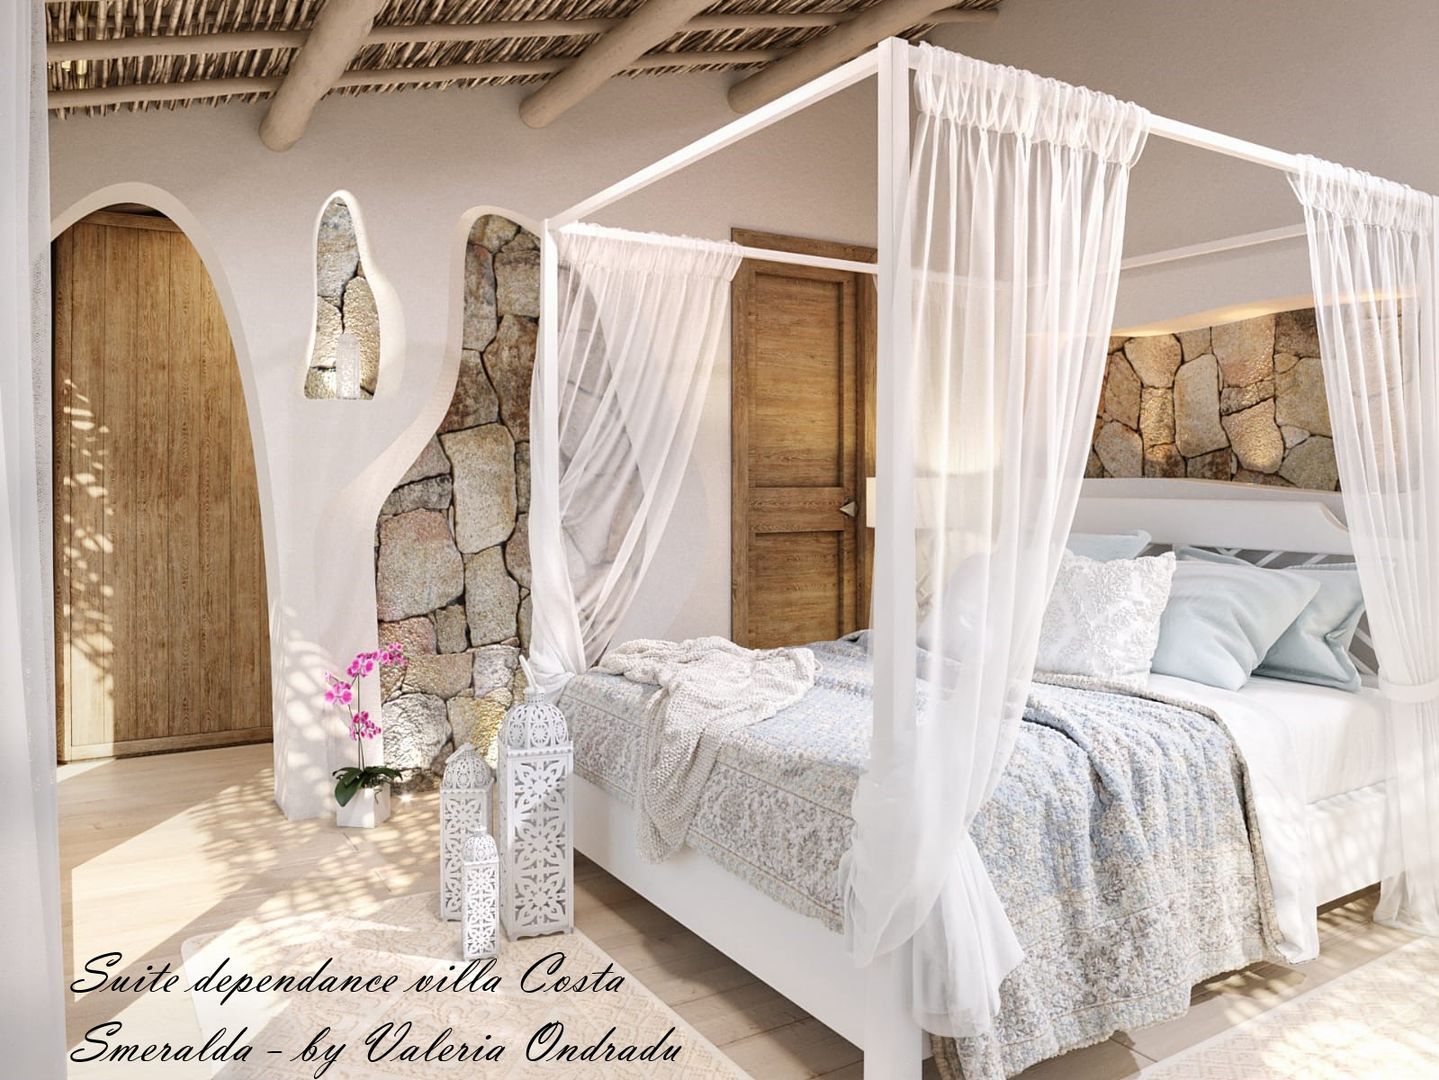 Suite Granito Valeria Ondradu Camera da letto in stile mediterraneo Progettazione di interni Costa Smeralda